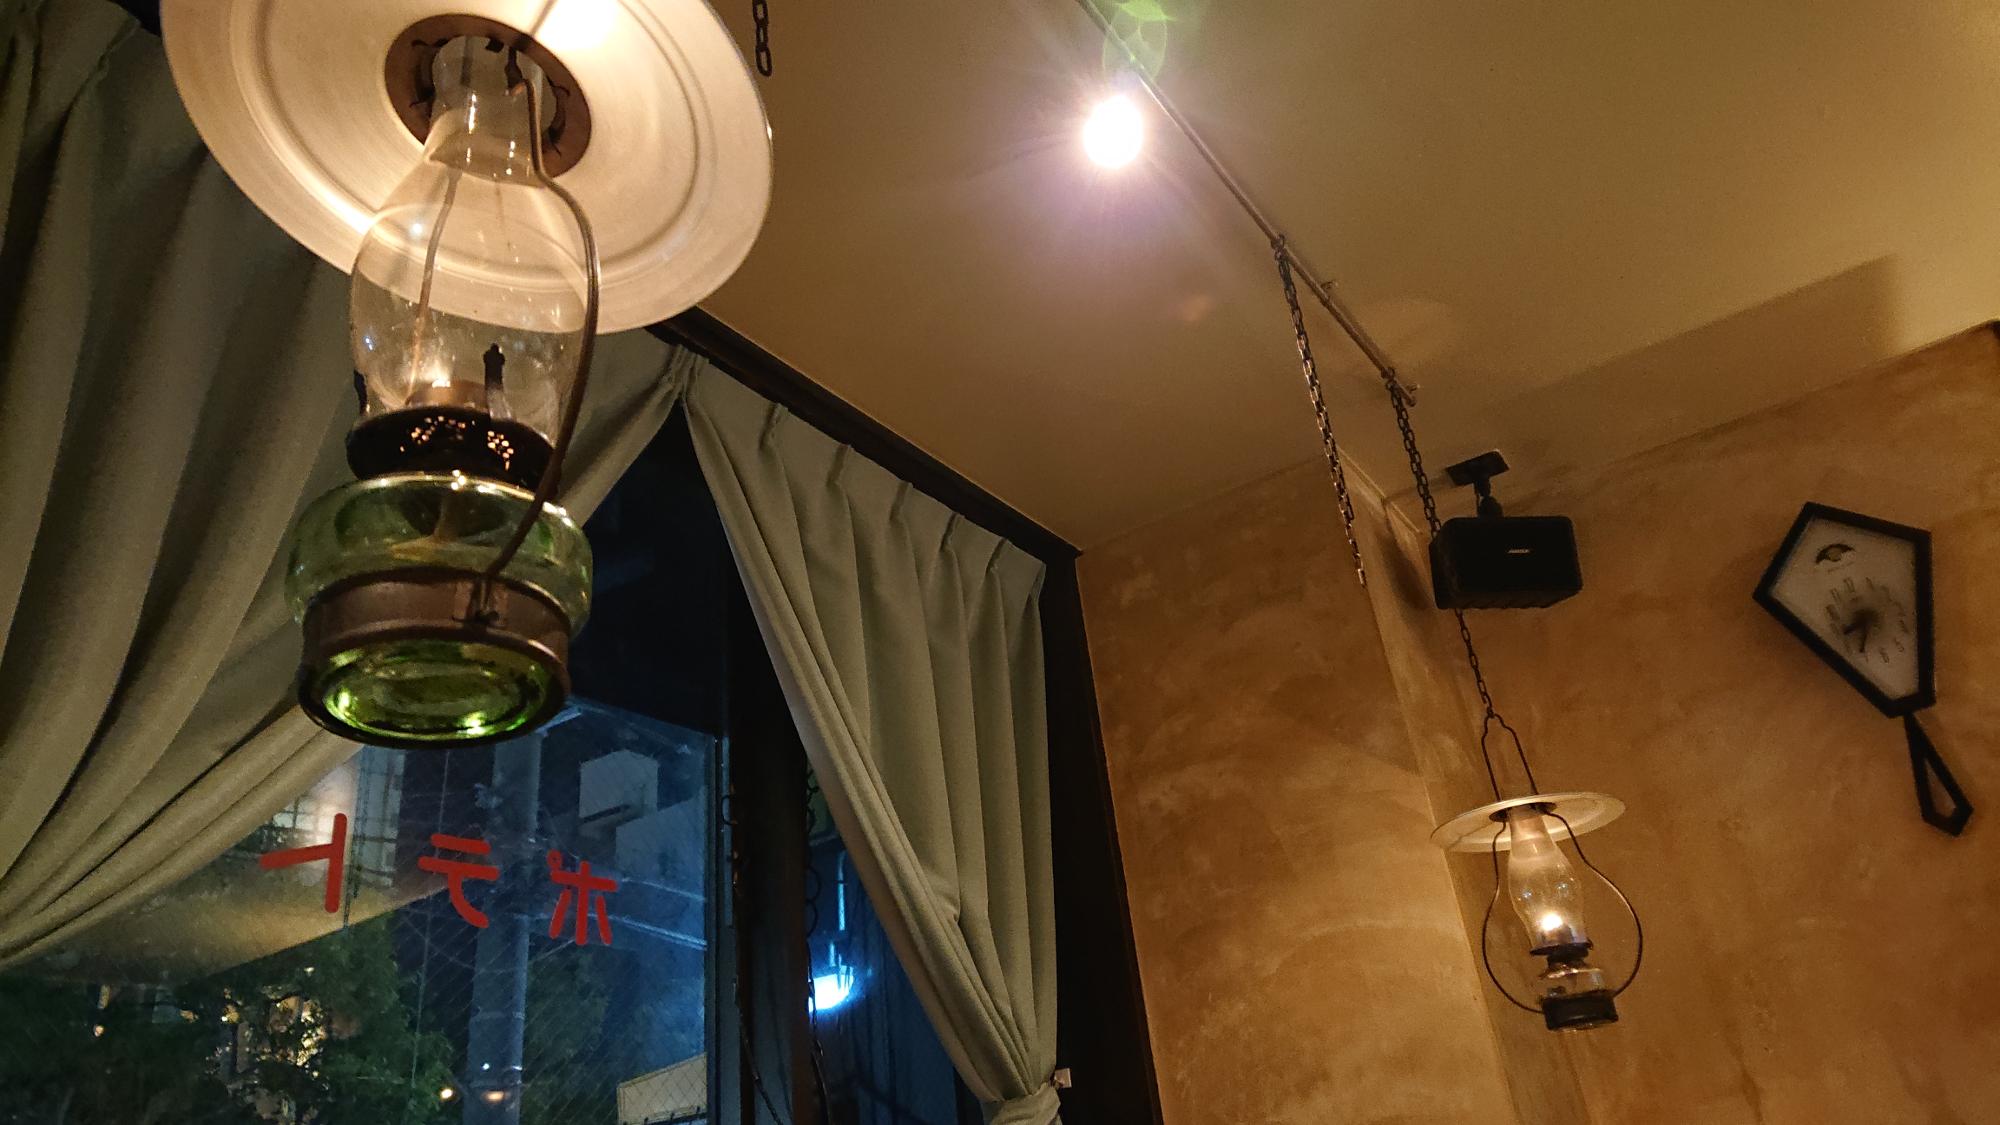 Lamp Light じゃがいもは優しいランプの灯りの下で料理を楽しむことができます。